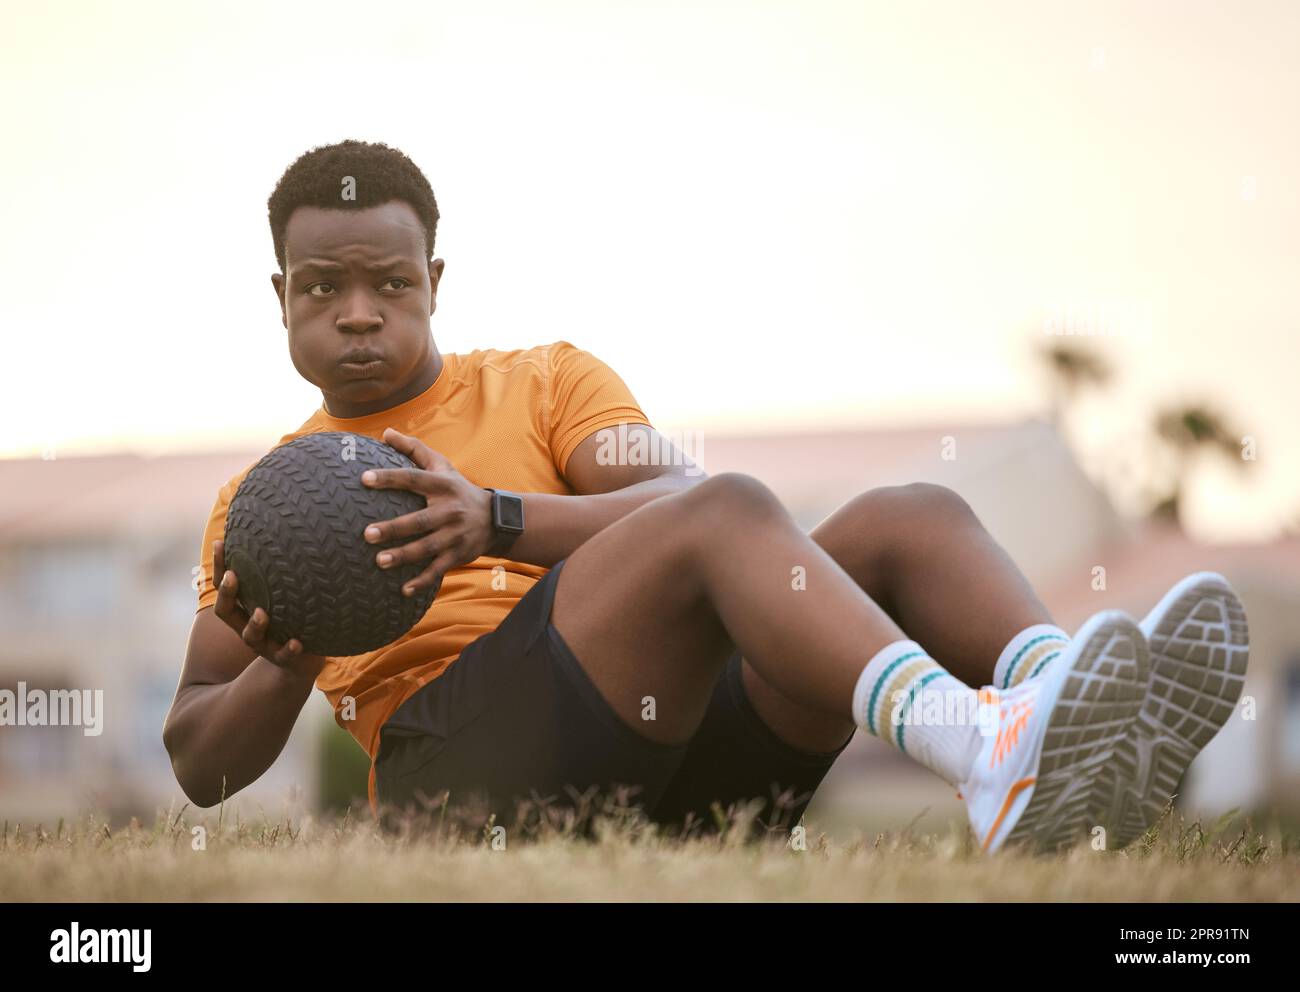 Ein sportlicher Mann, der Sport treibt, an seiner Fitness arbeitet. Ein afroamerikanischer Sportler, der einen Medizinball benutzt, einen aktiven, gesunden Lebensstil lebt, auf dem Gras sitzt und Sit-ups macht Stockfoto